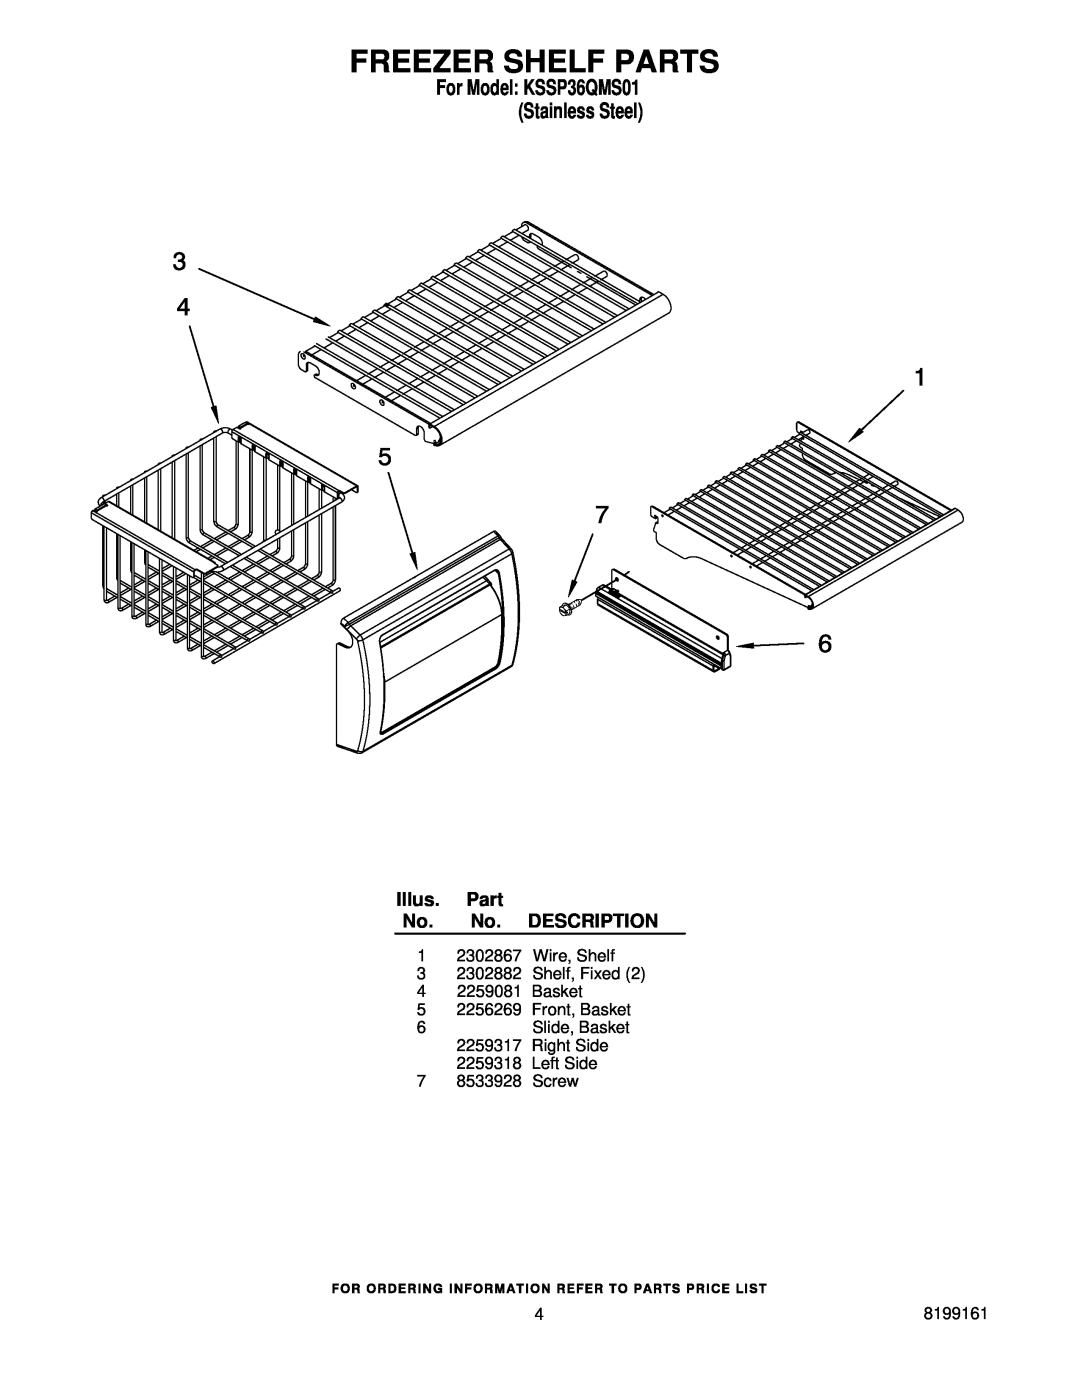 KitchenAid manual Freezer Shelf Parts, For Model KSSP36QMS01 Stainless Steel, Illus. Part No. No. DESCRIPTION 